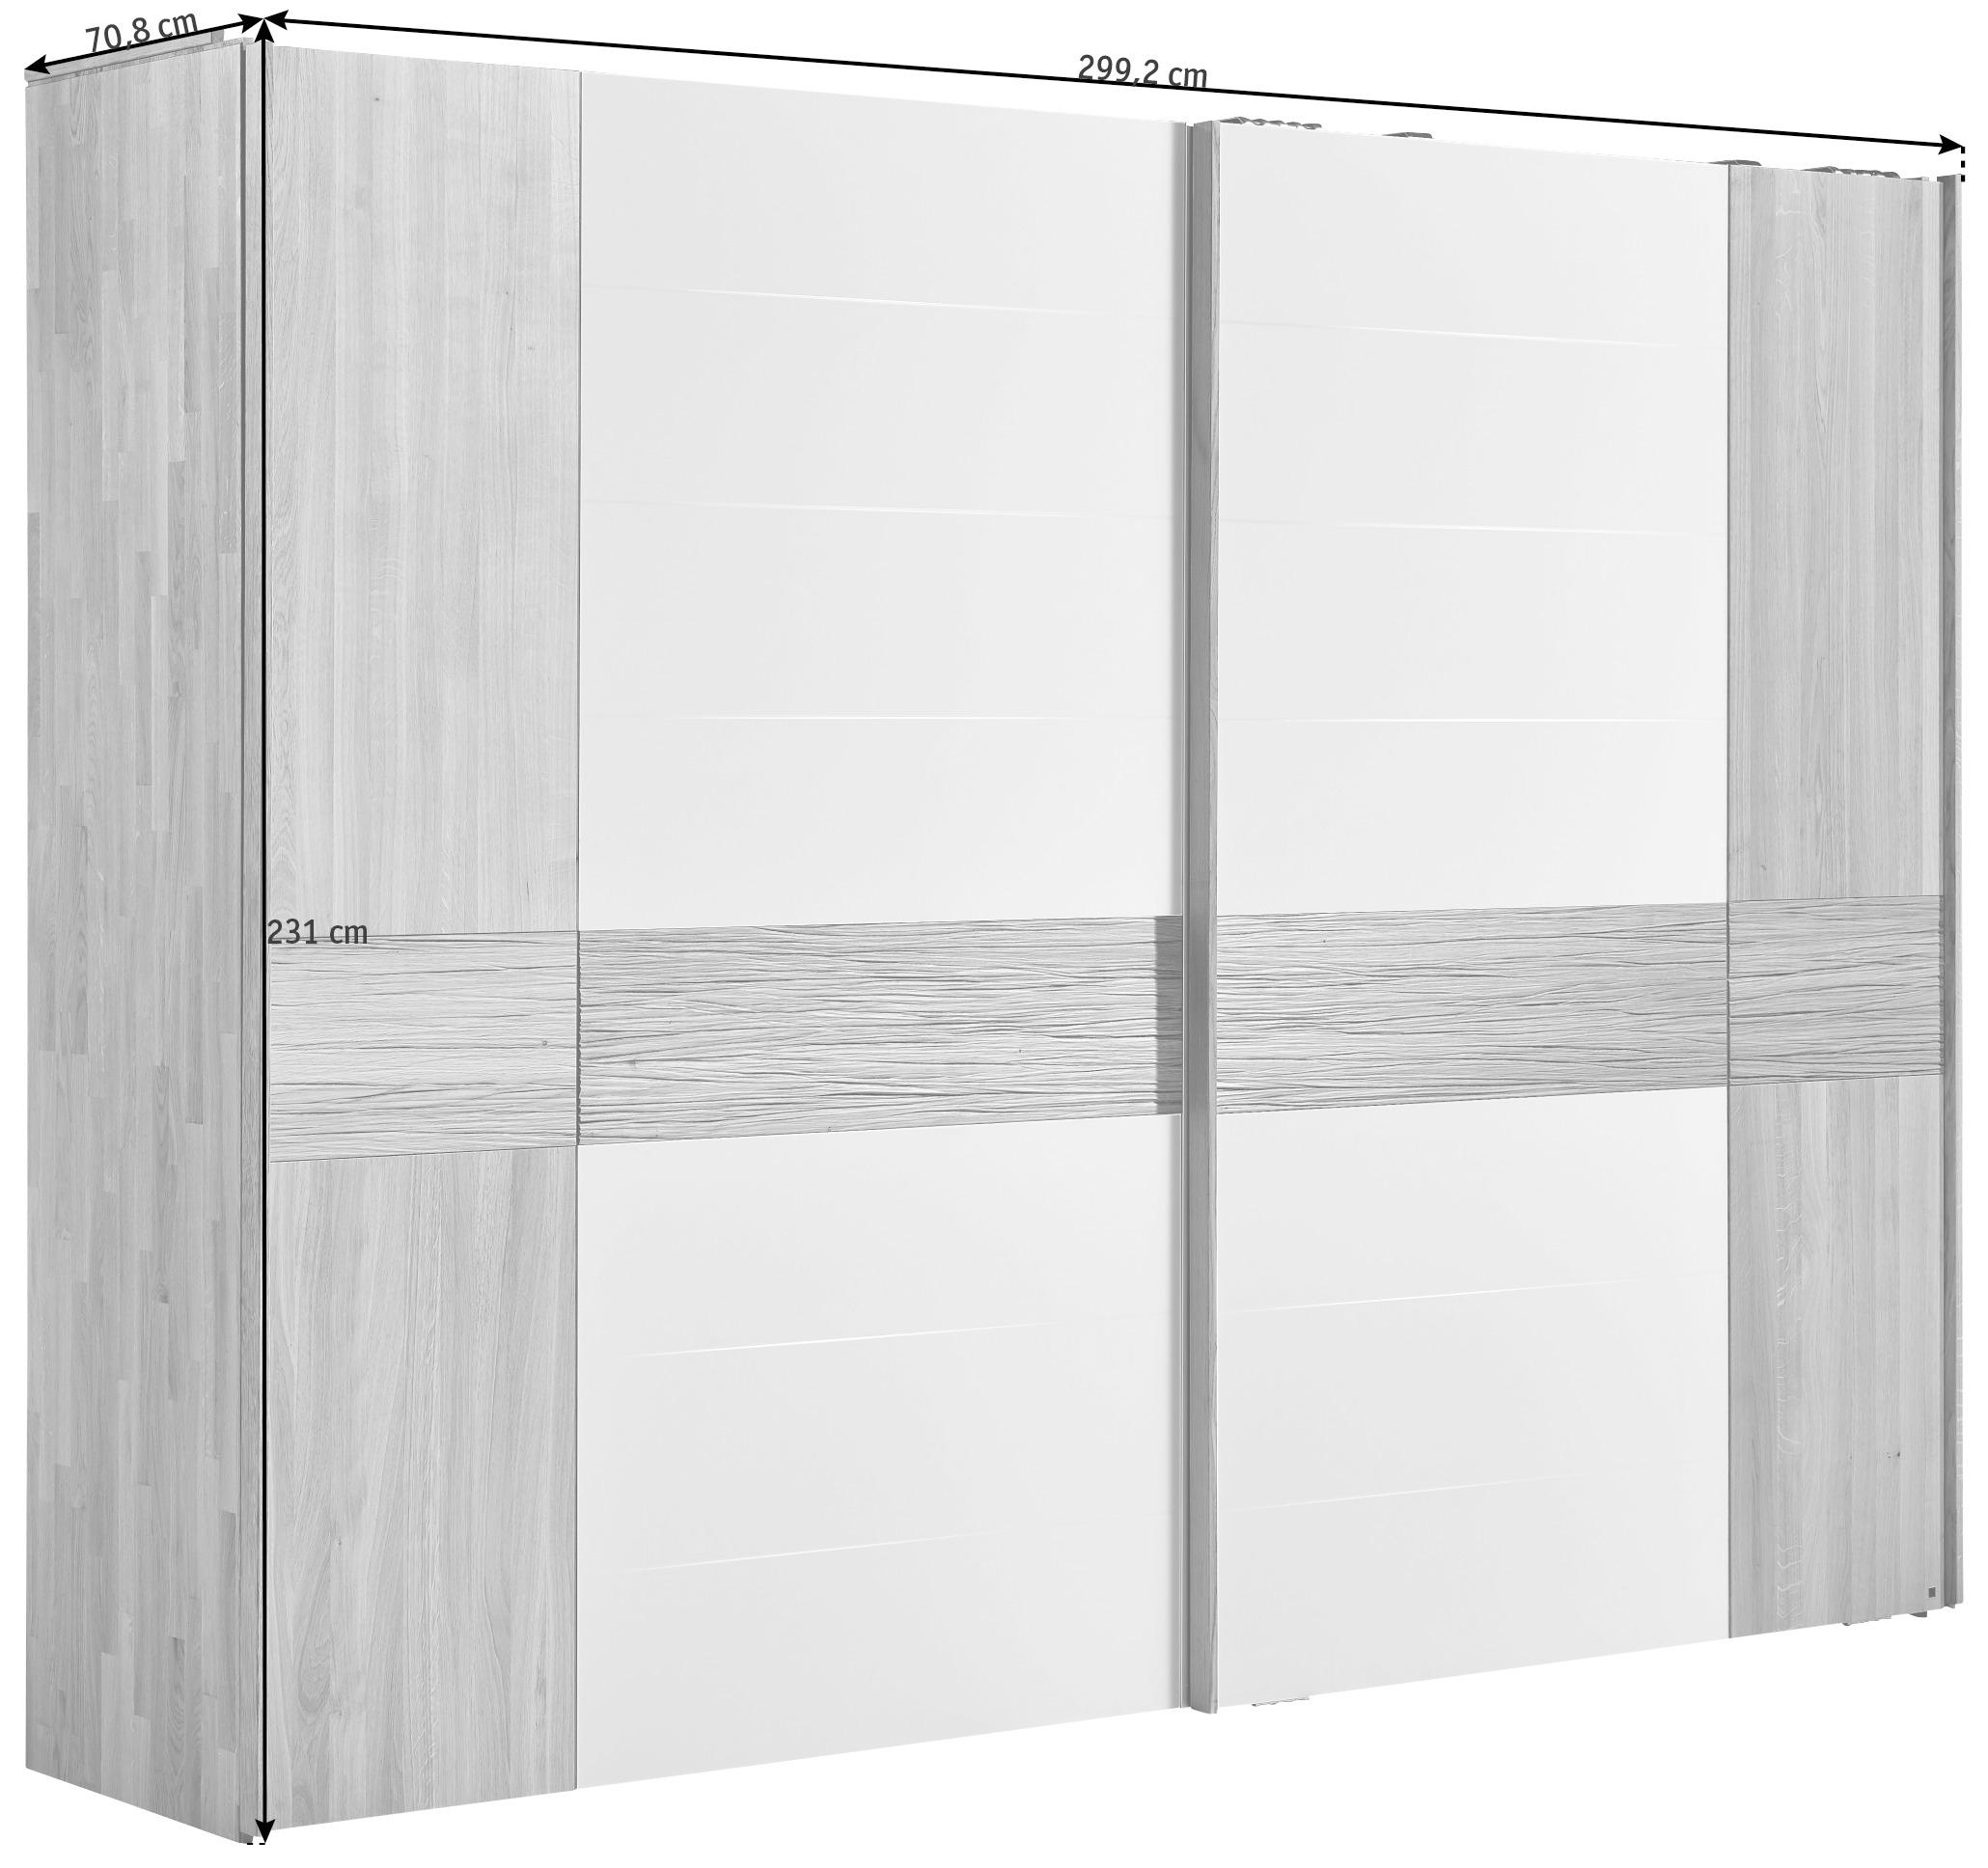 SCHWEBETÜRENSCHRANK  in Weiß, Eichefarben  - Eichefarben/Weiß, Design, Glas/Holz (299,2/231,0/70,8cm) - Valdera